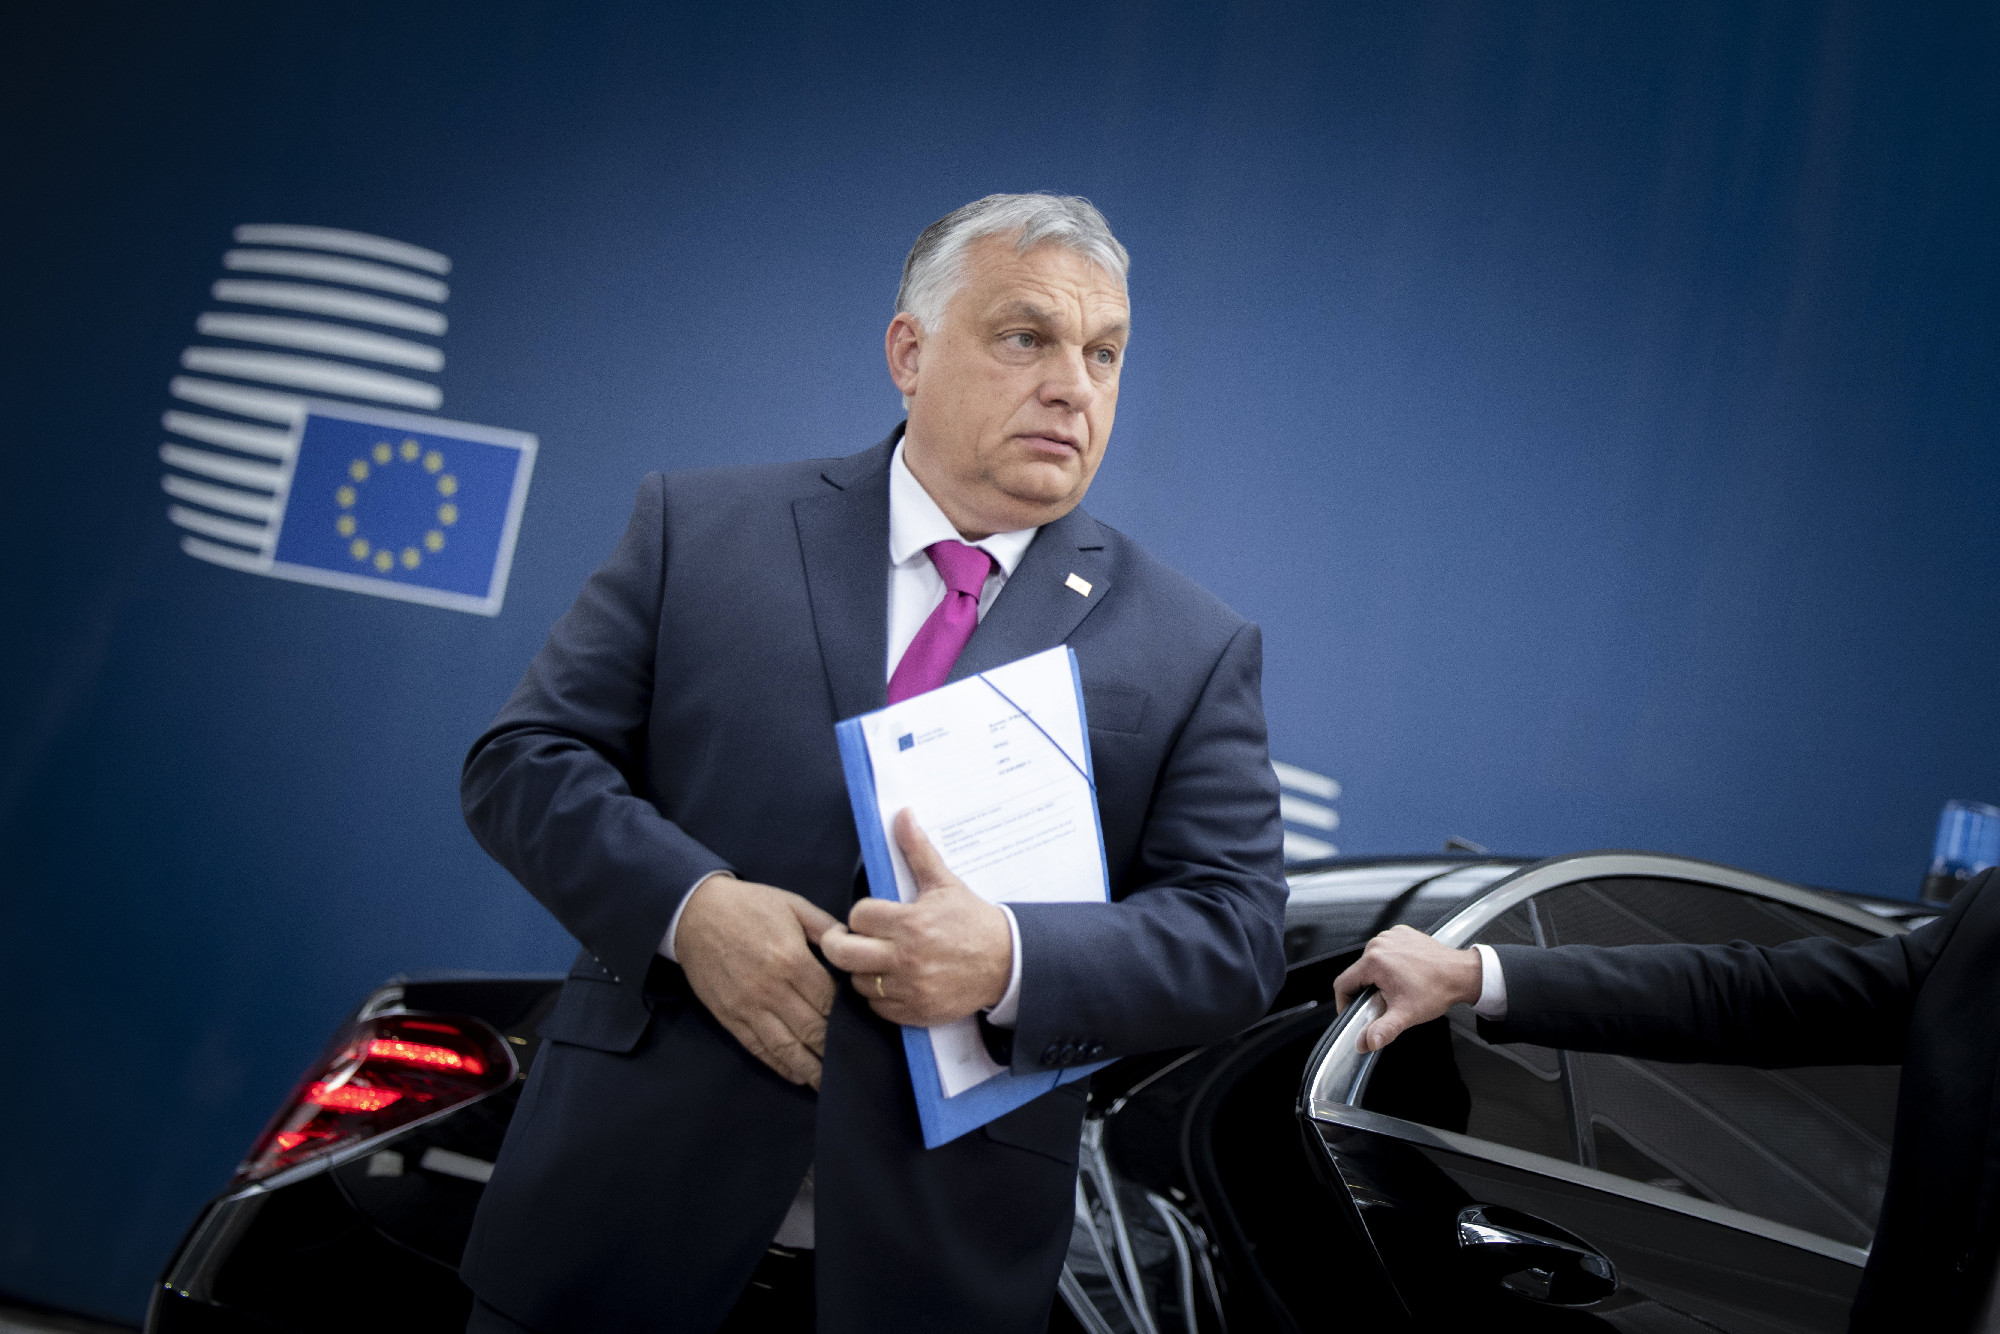 Az ukrán külügyminisztérium hálás az EU-nak az új szankciókért, de csalódott Budapest álláspontja miatt